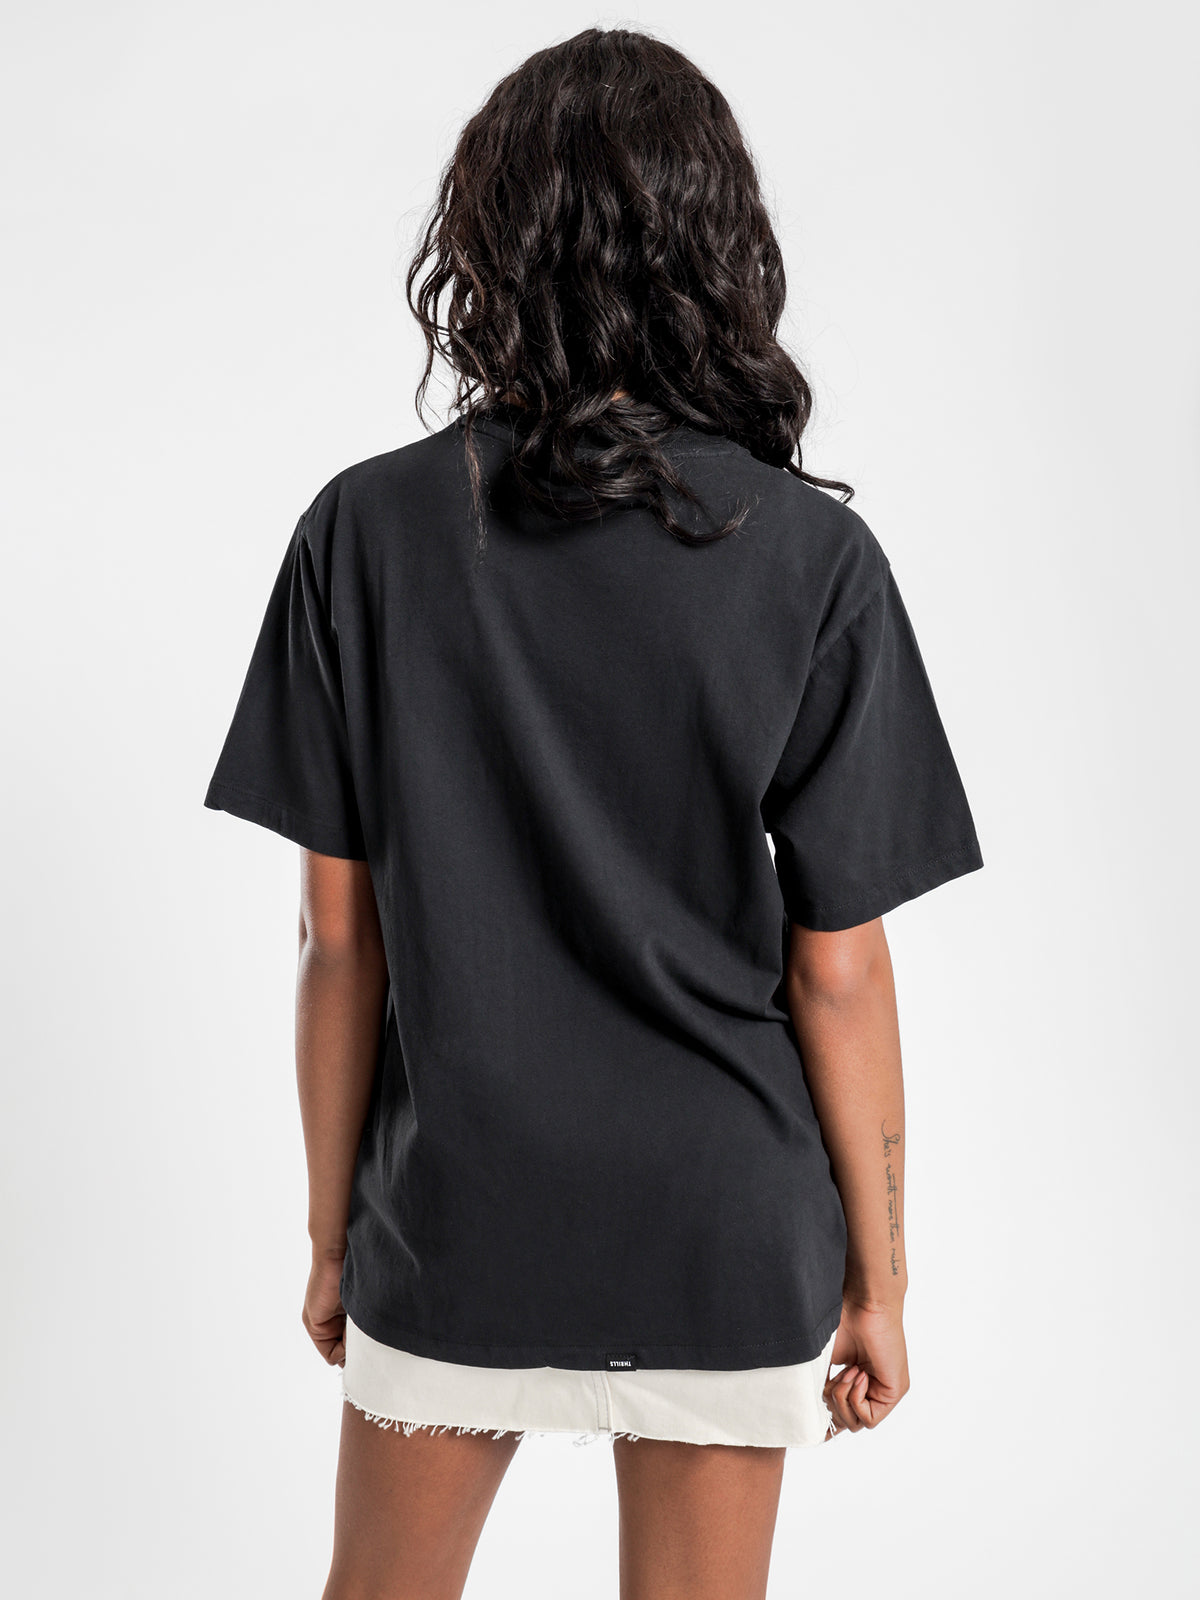 Flaming Moe Merch Fit T-Shirt in Black